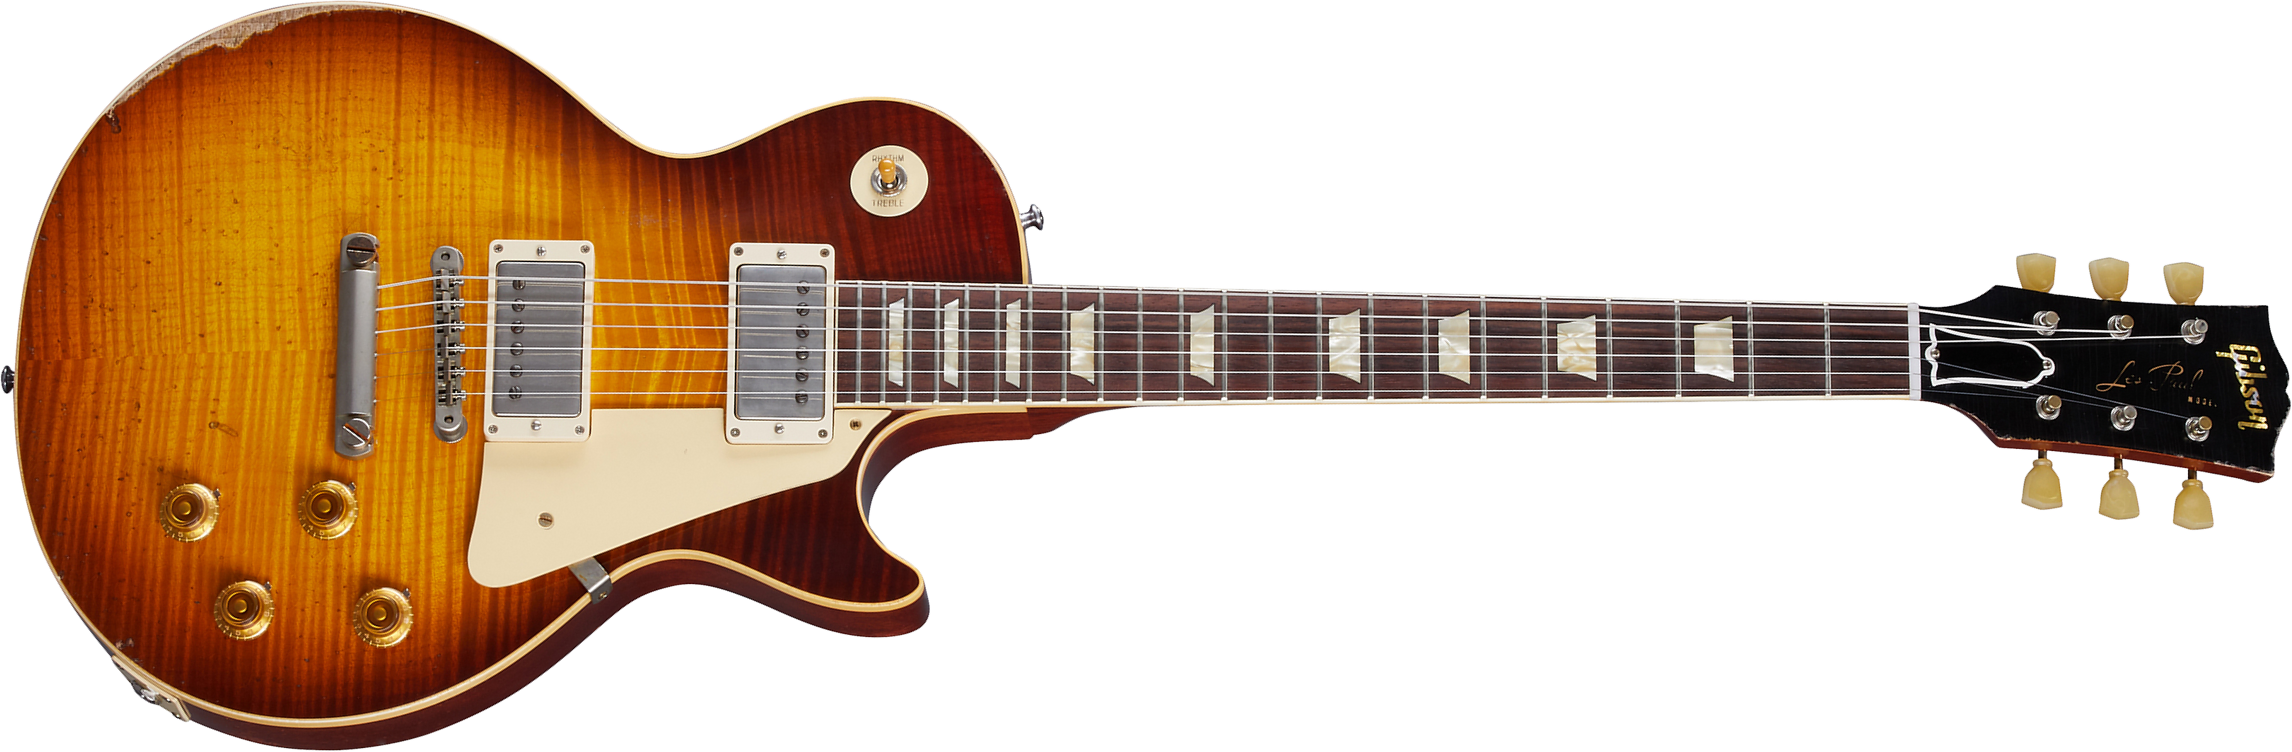 Gibson Custom Shop Murphy Lab Les Paul Standard 1959 Reissue 2h Ht Rw - Heavy Aged Slow Iced Tea Fade - Enkel gesneden elektrische gitaar - Main pictu